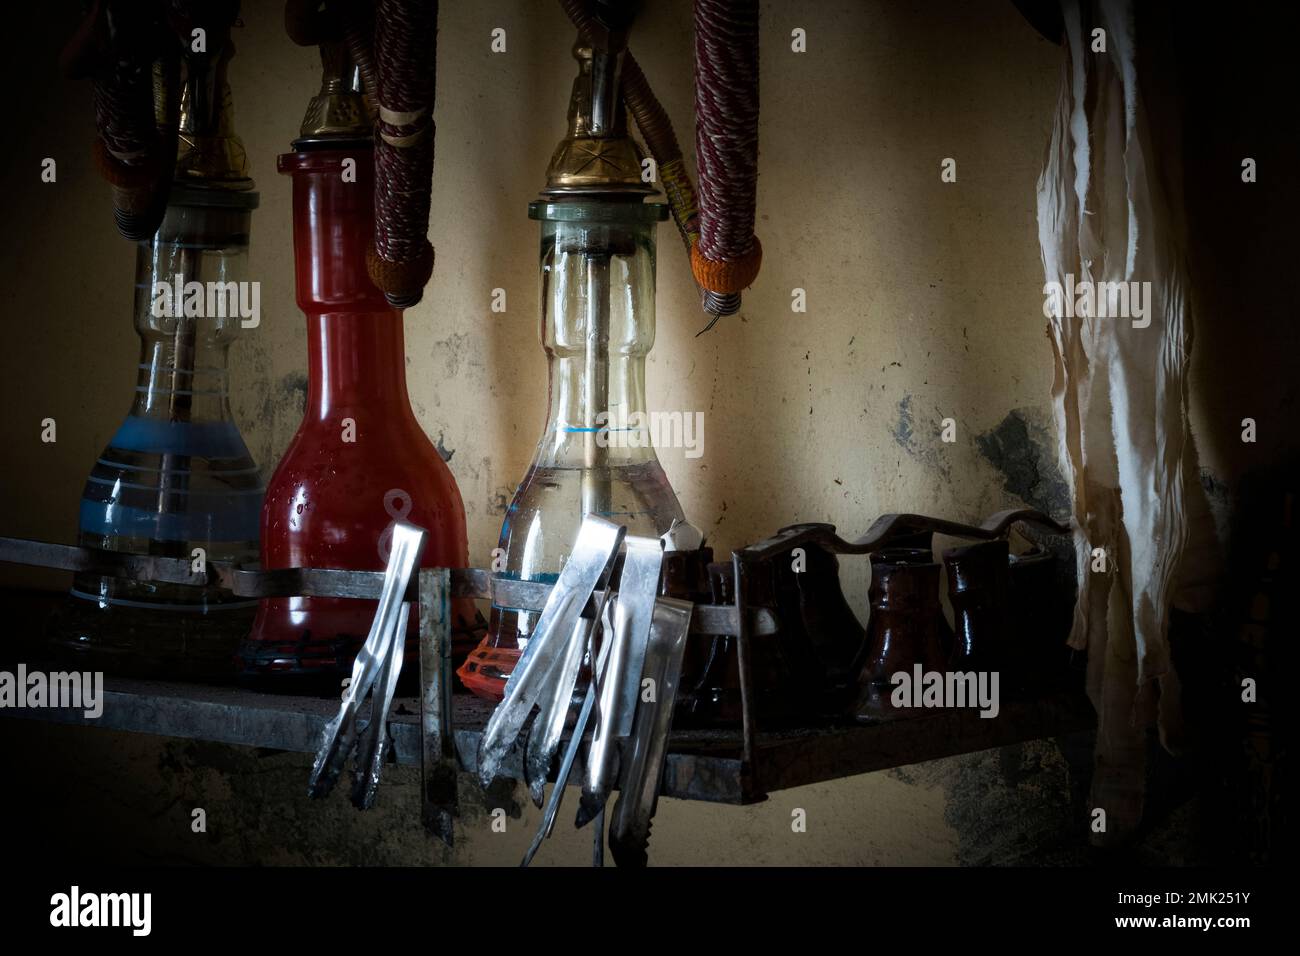 Moody images at a Shisha bar in Egypt Stock Photo